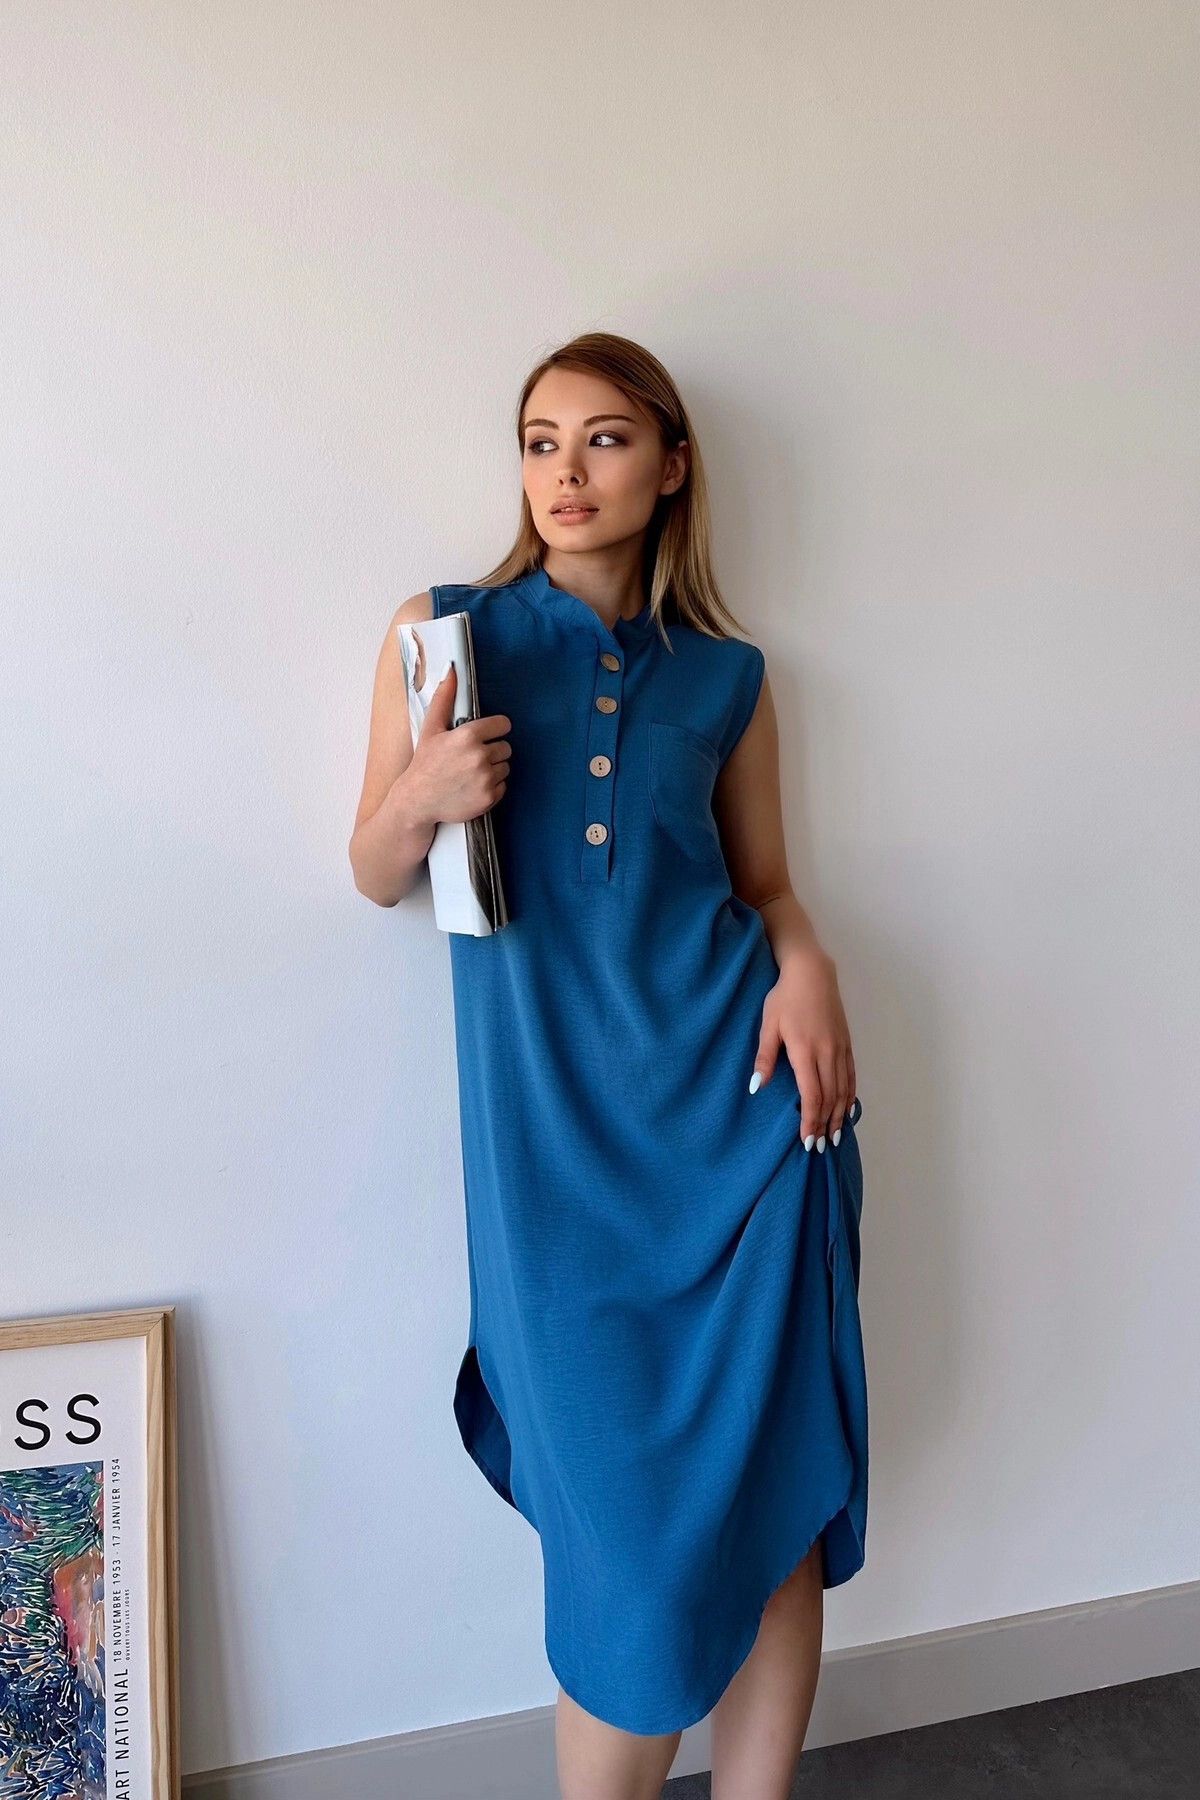 New Laviva Kadın Indigo Kolsuz, Dik Yaka, Düz Renk Desen, Tek Cepli, A-line Kesim, Düğme Detaylı Midi Elbise